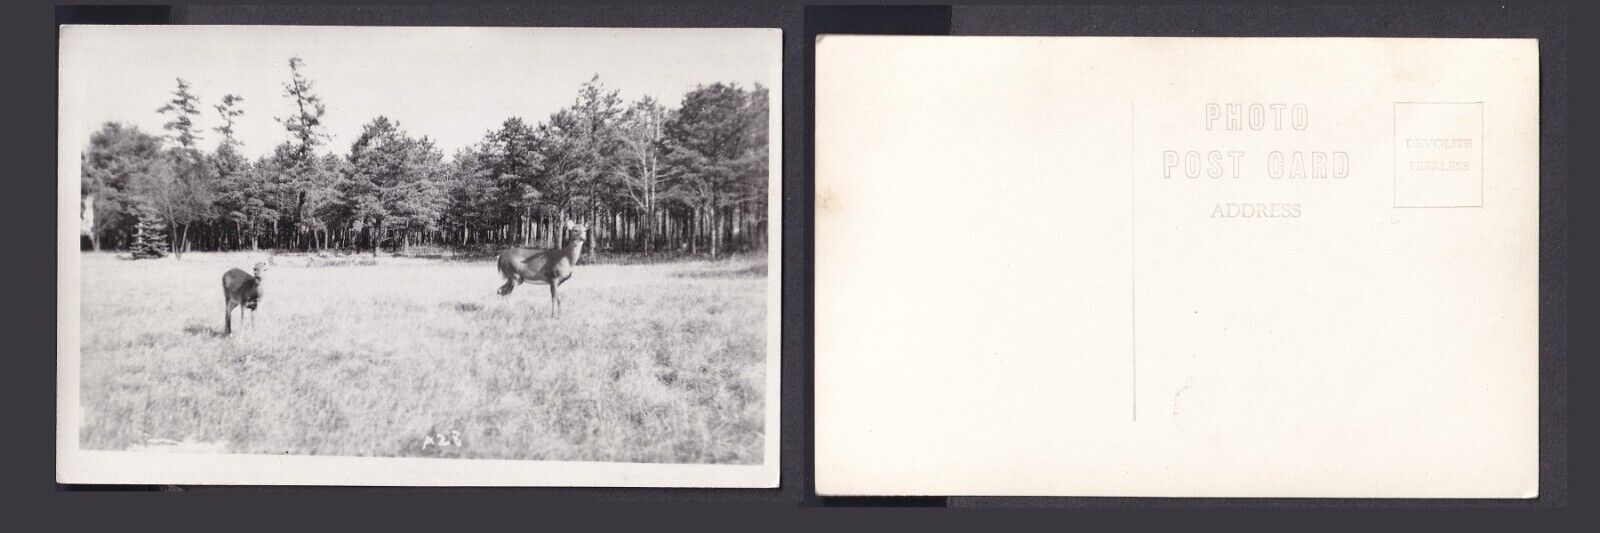 RPPC 2 Deer in Field Vintage Unused Postcard